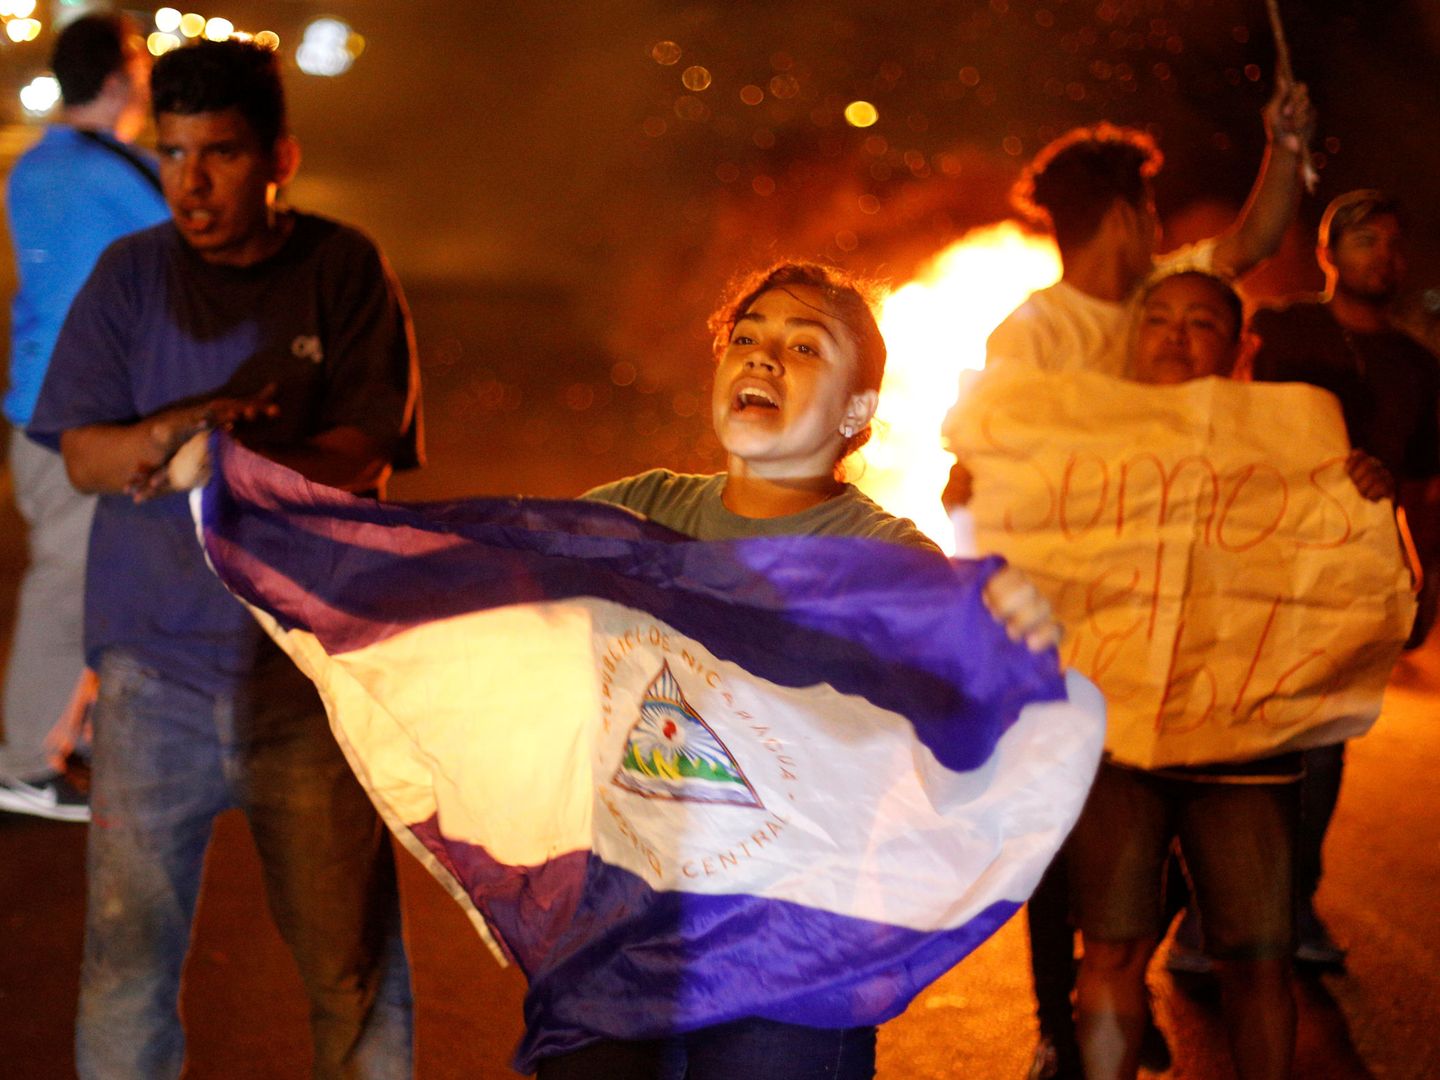 Una manifestante agita una bandera nicaragüense delante de una barricada en llamas. (Reuters)